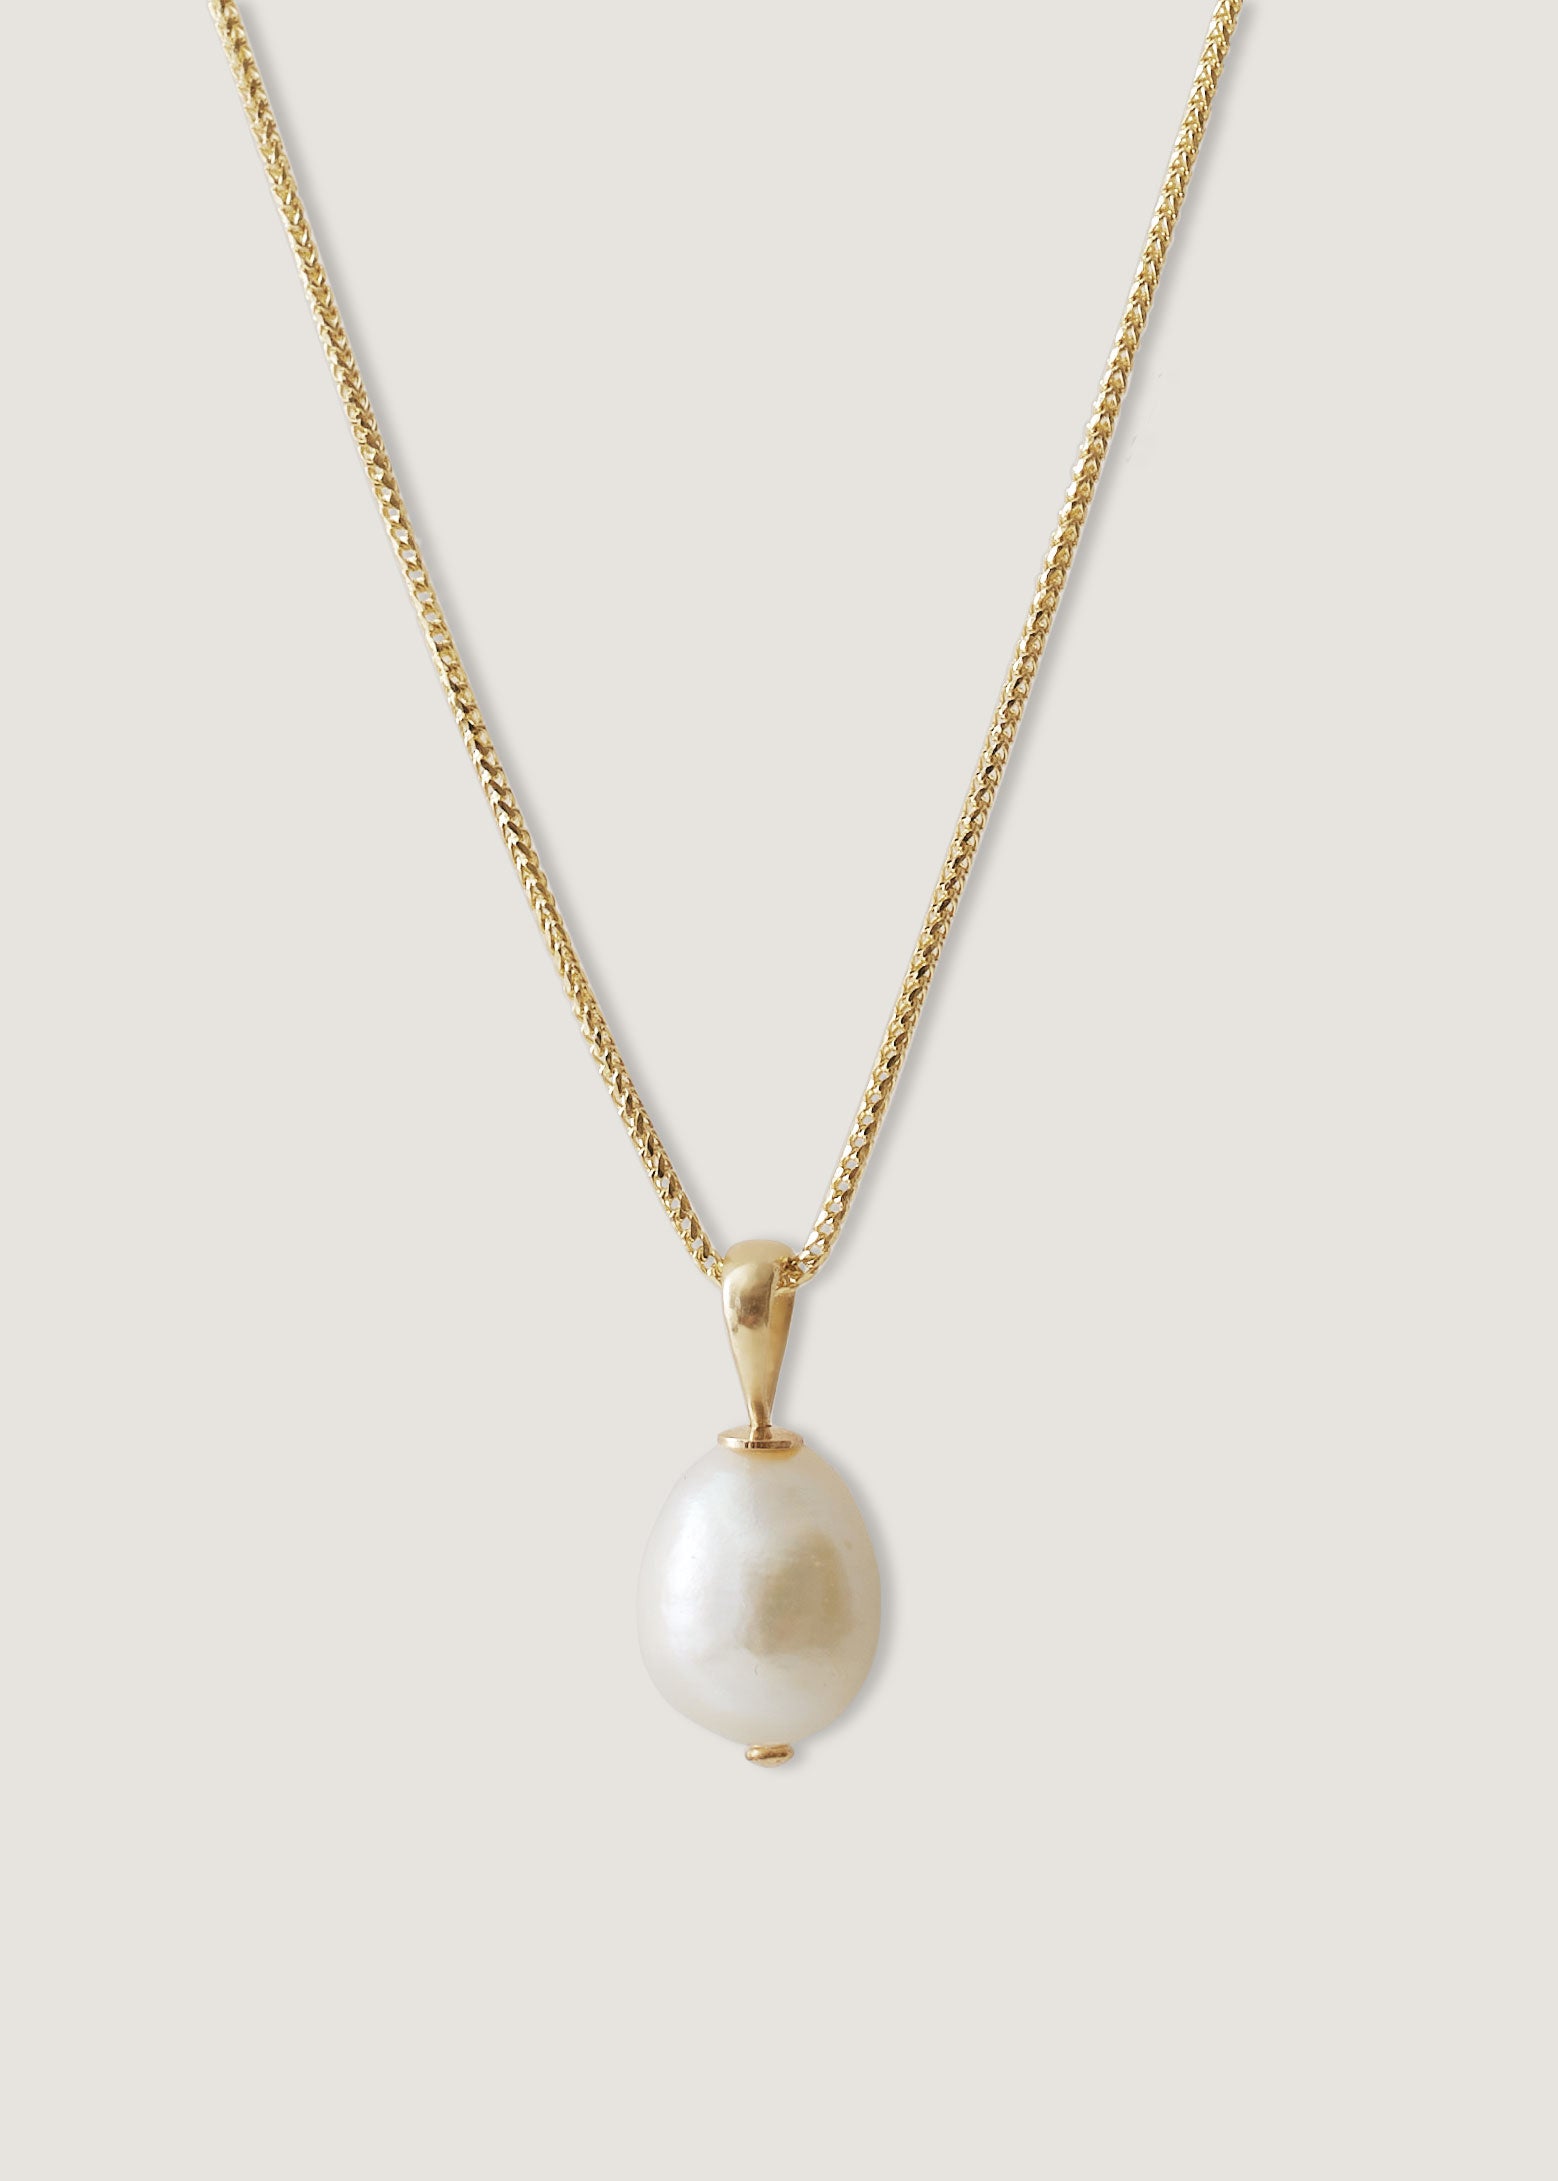 alt="Baroque Pearl Drop Necklace"